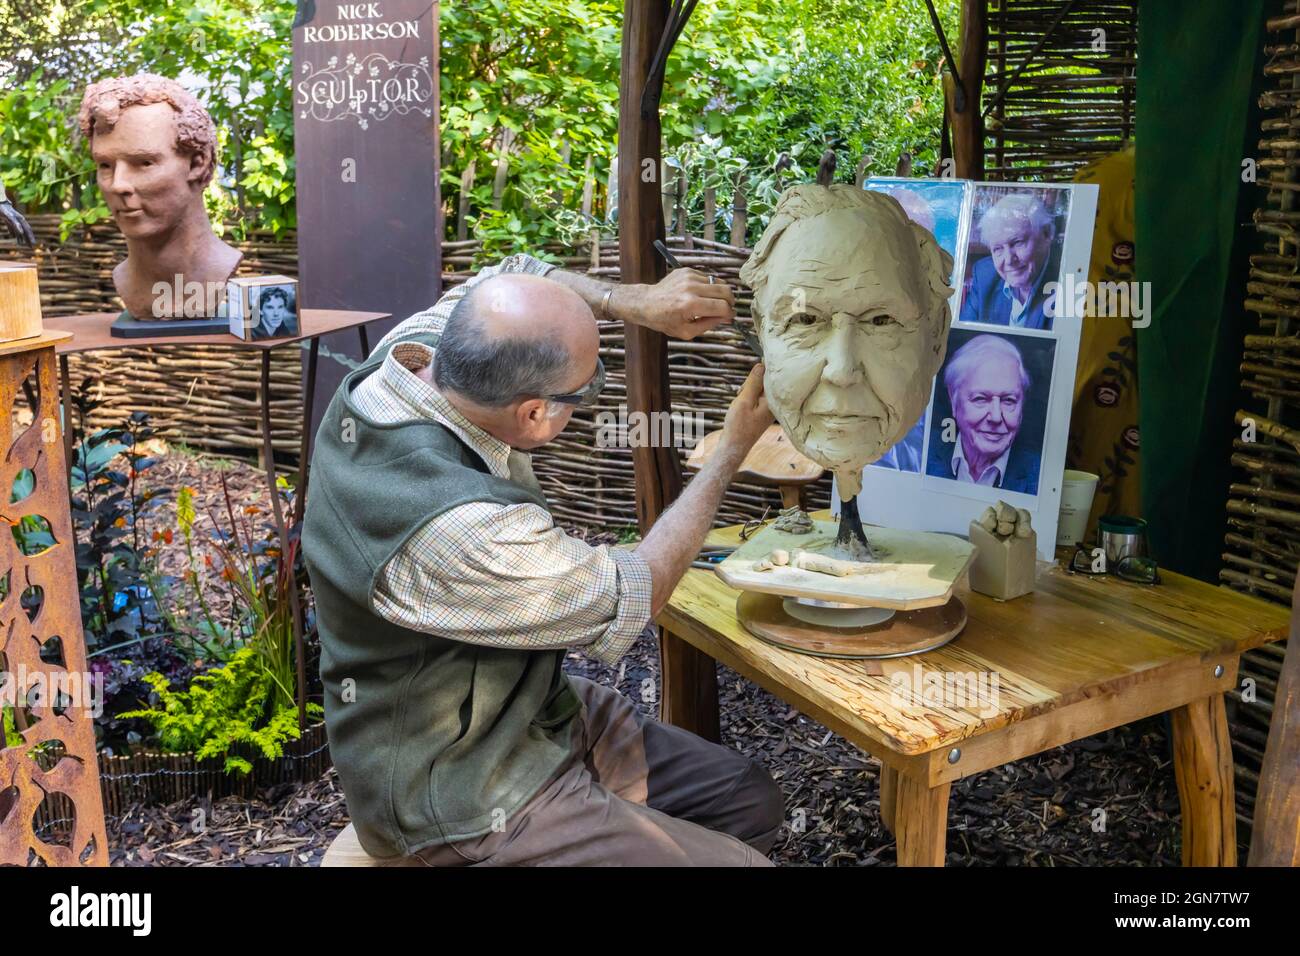 Nick Roberson, scultore, lavorando ad una scultura di David Attenborough al RHS Chelsea Flower Show, Londra SW3 nel settembre 2021 Foto Stock